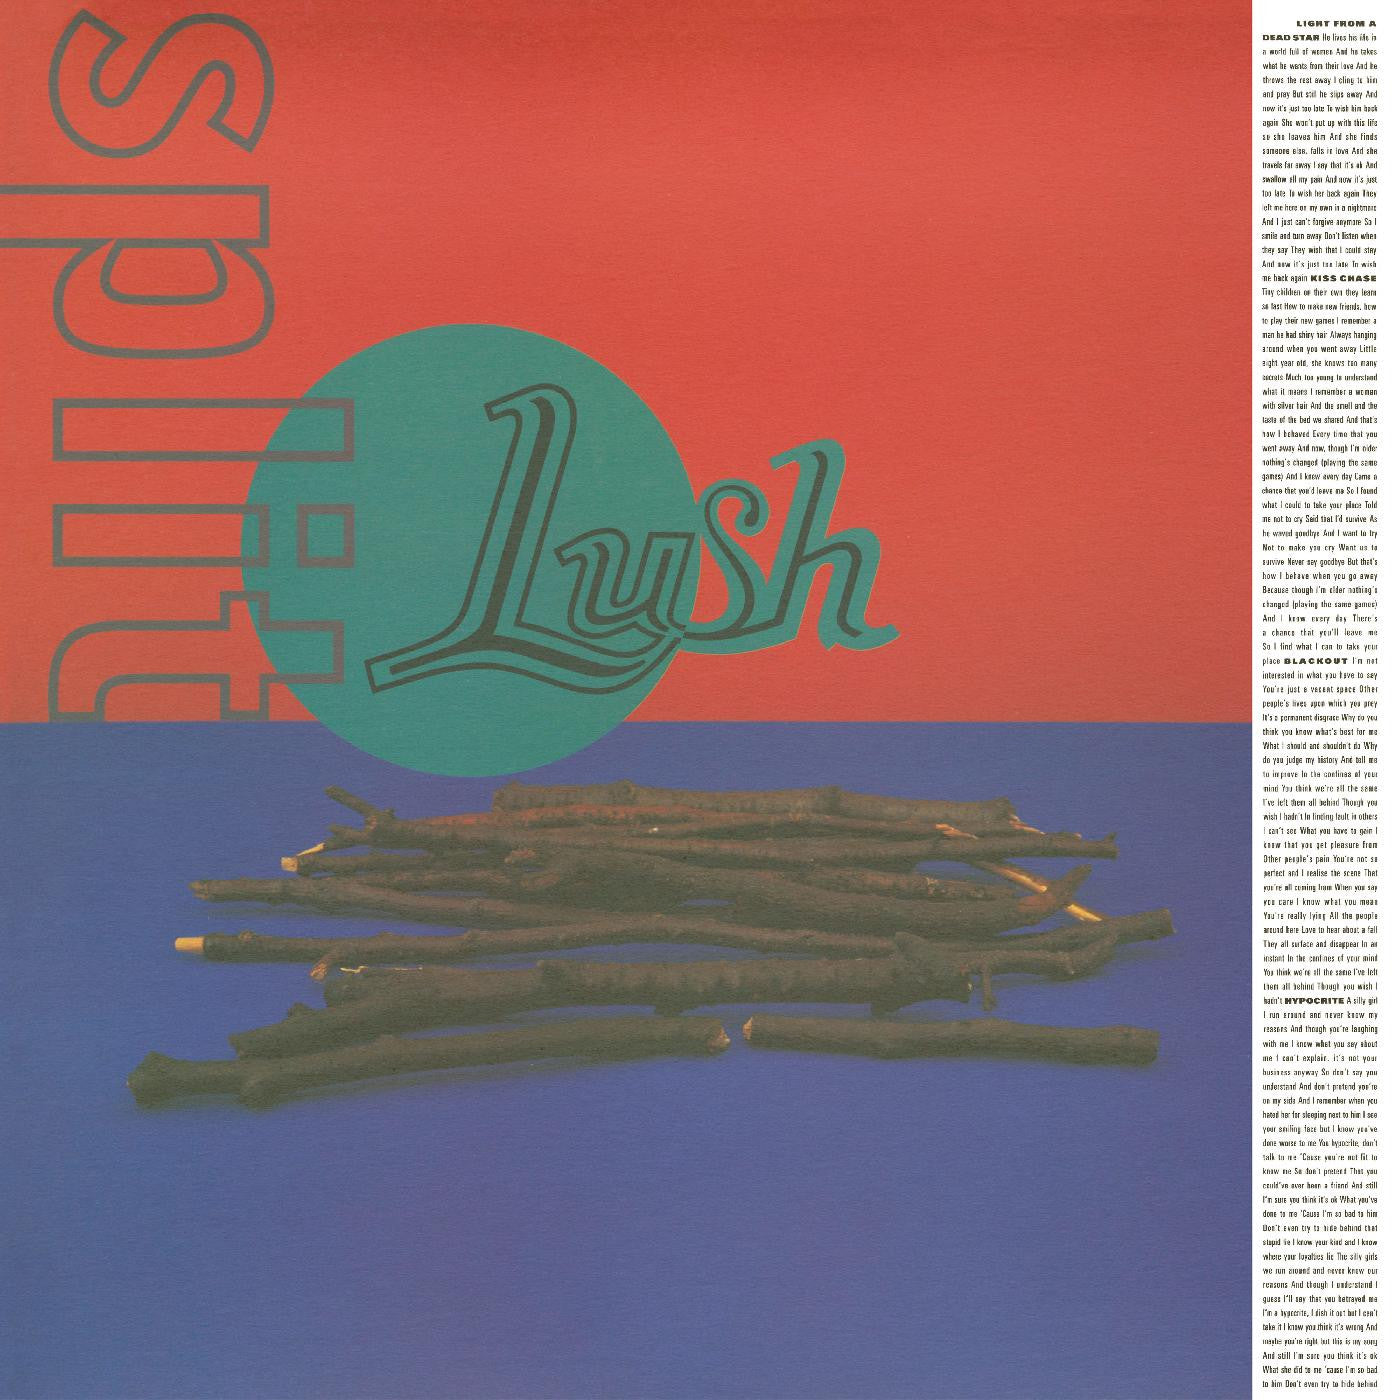 Lush - Split LP